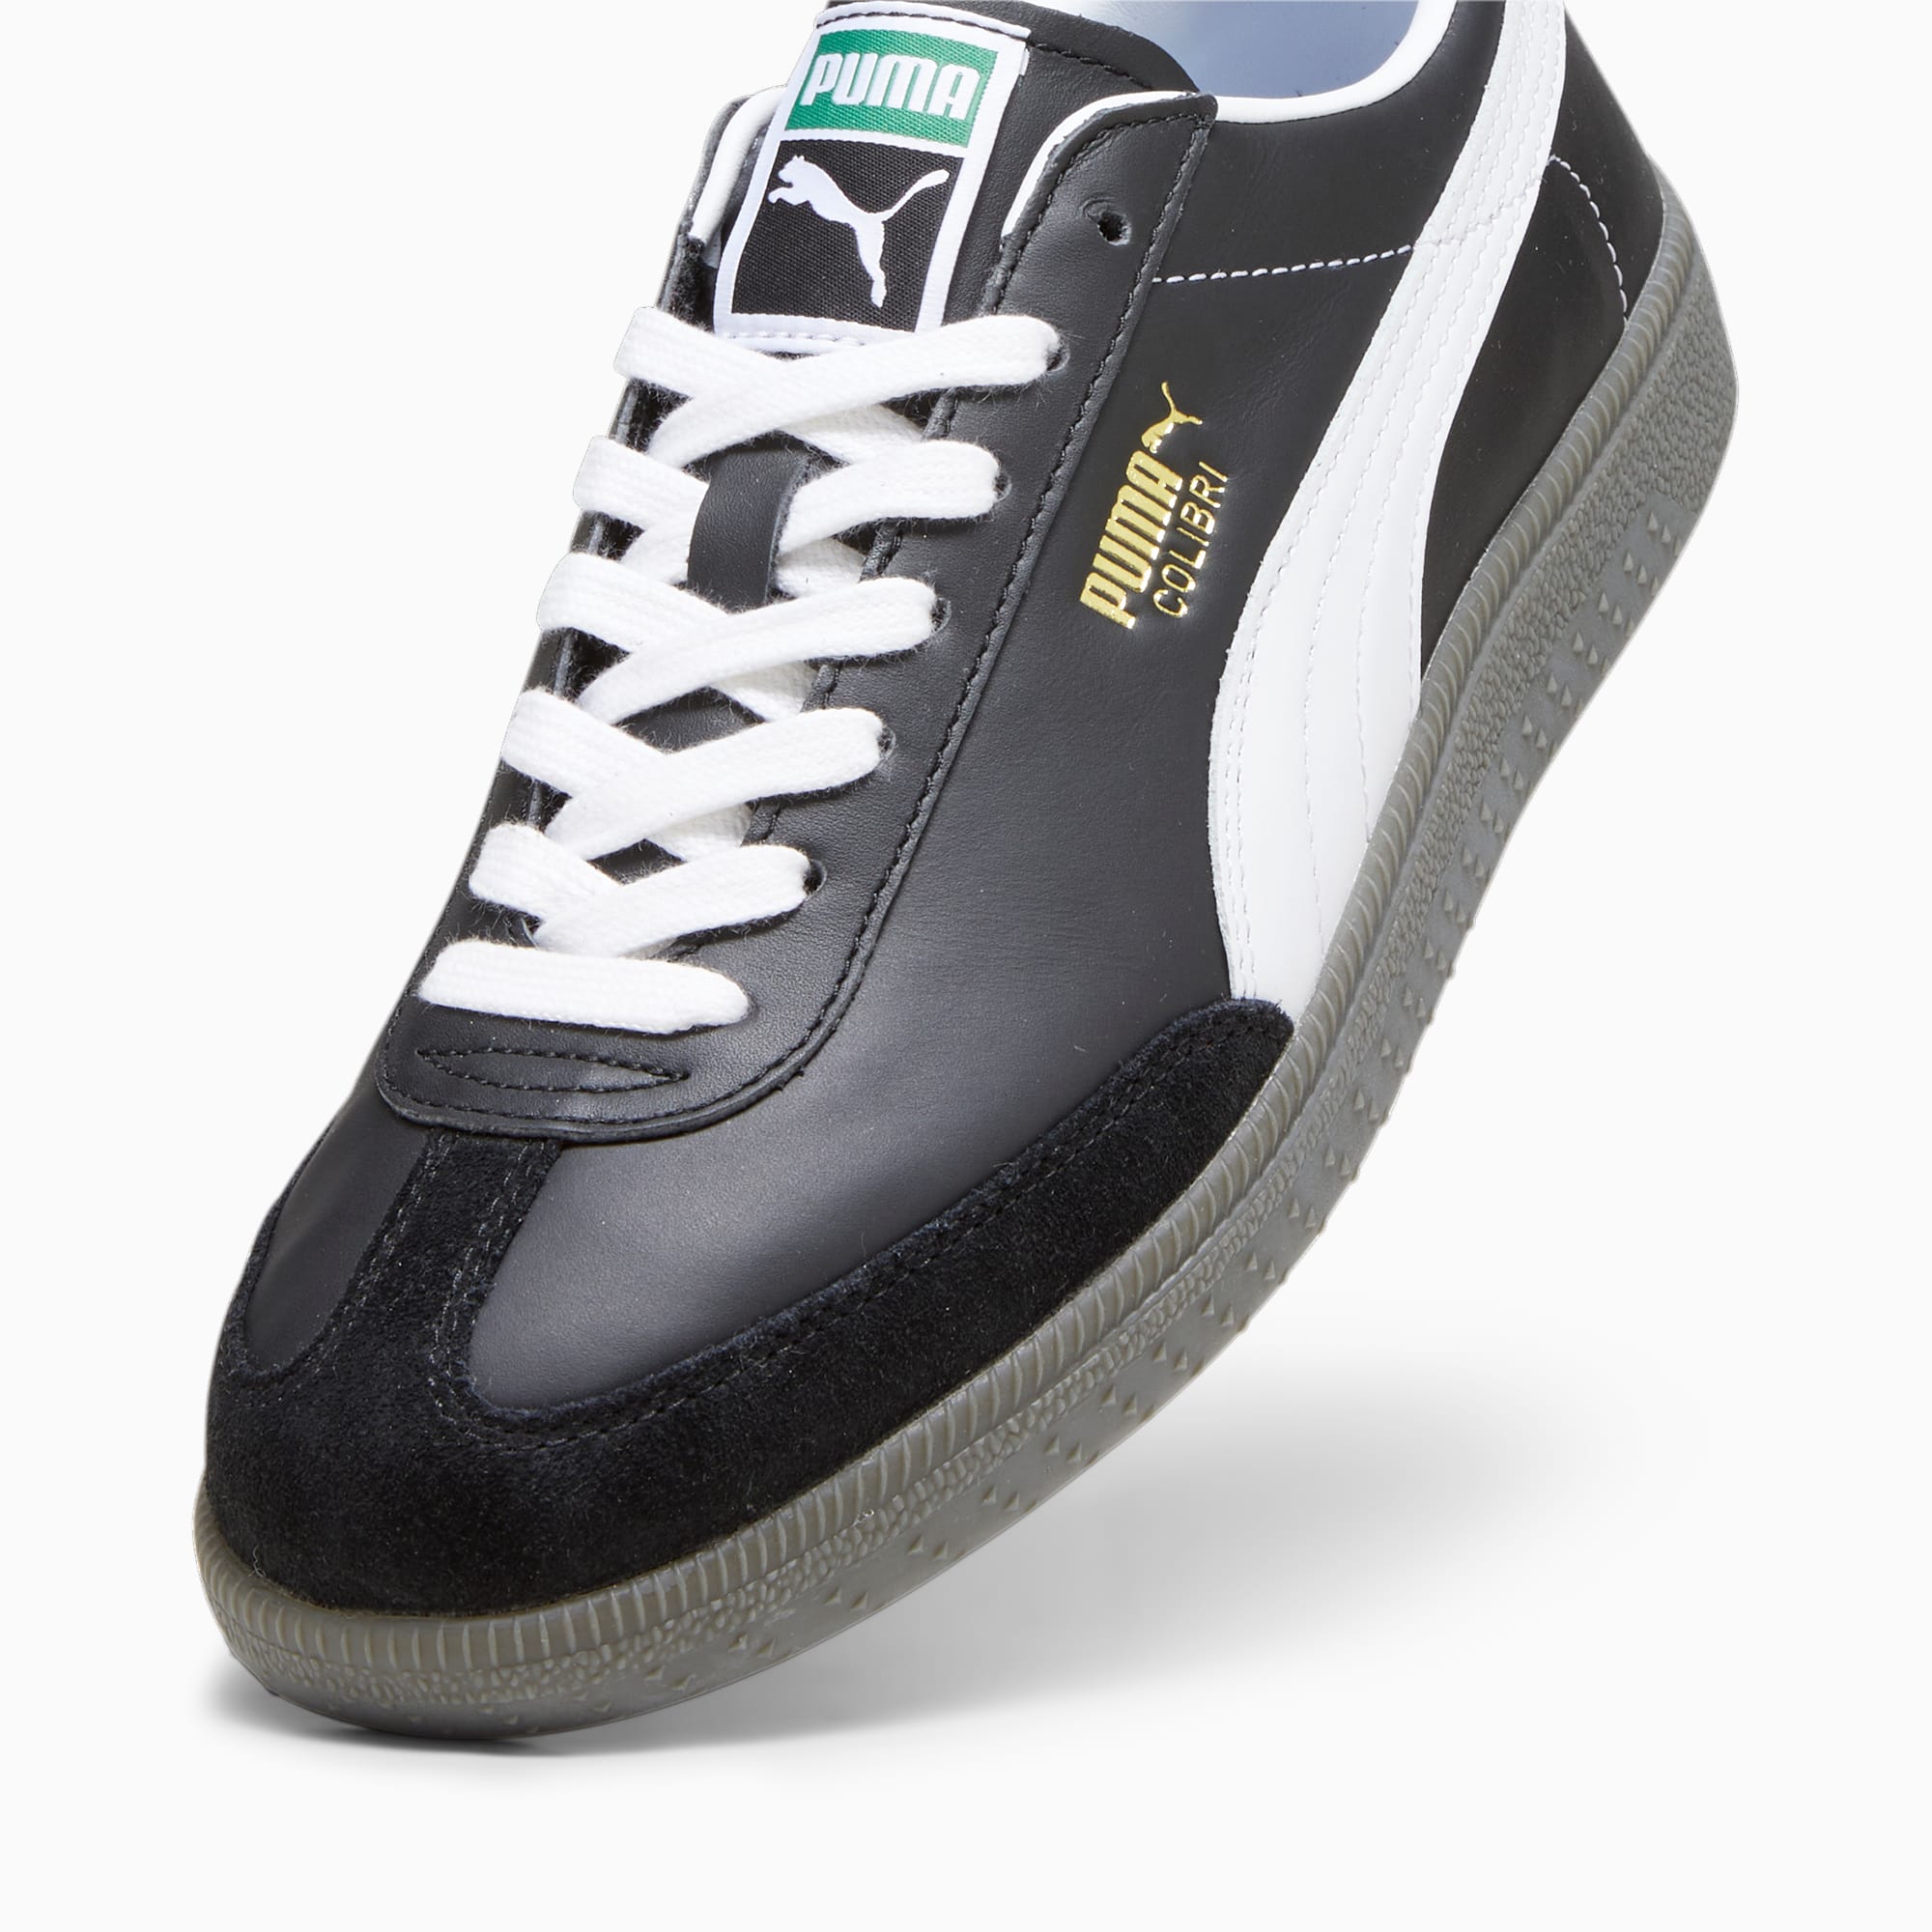 PUMA Colibri OG Sneakers Schuhe, Schwarz/Weiß, Größe: 38, Schuhe